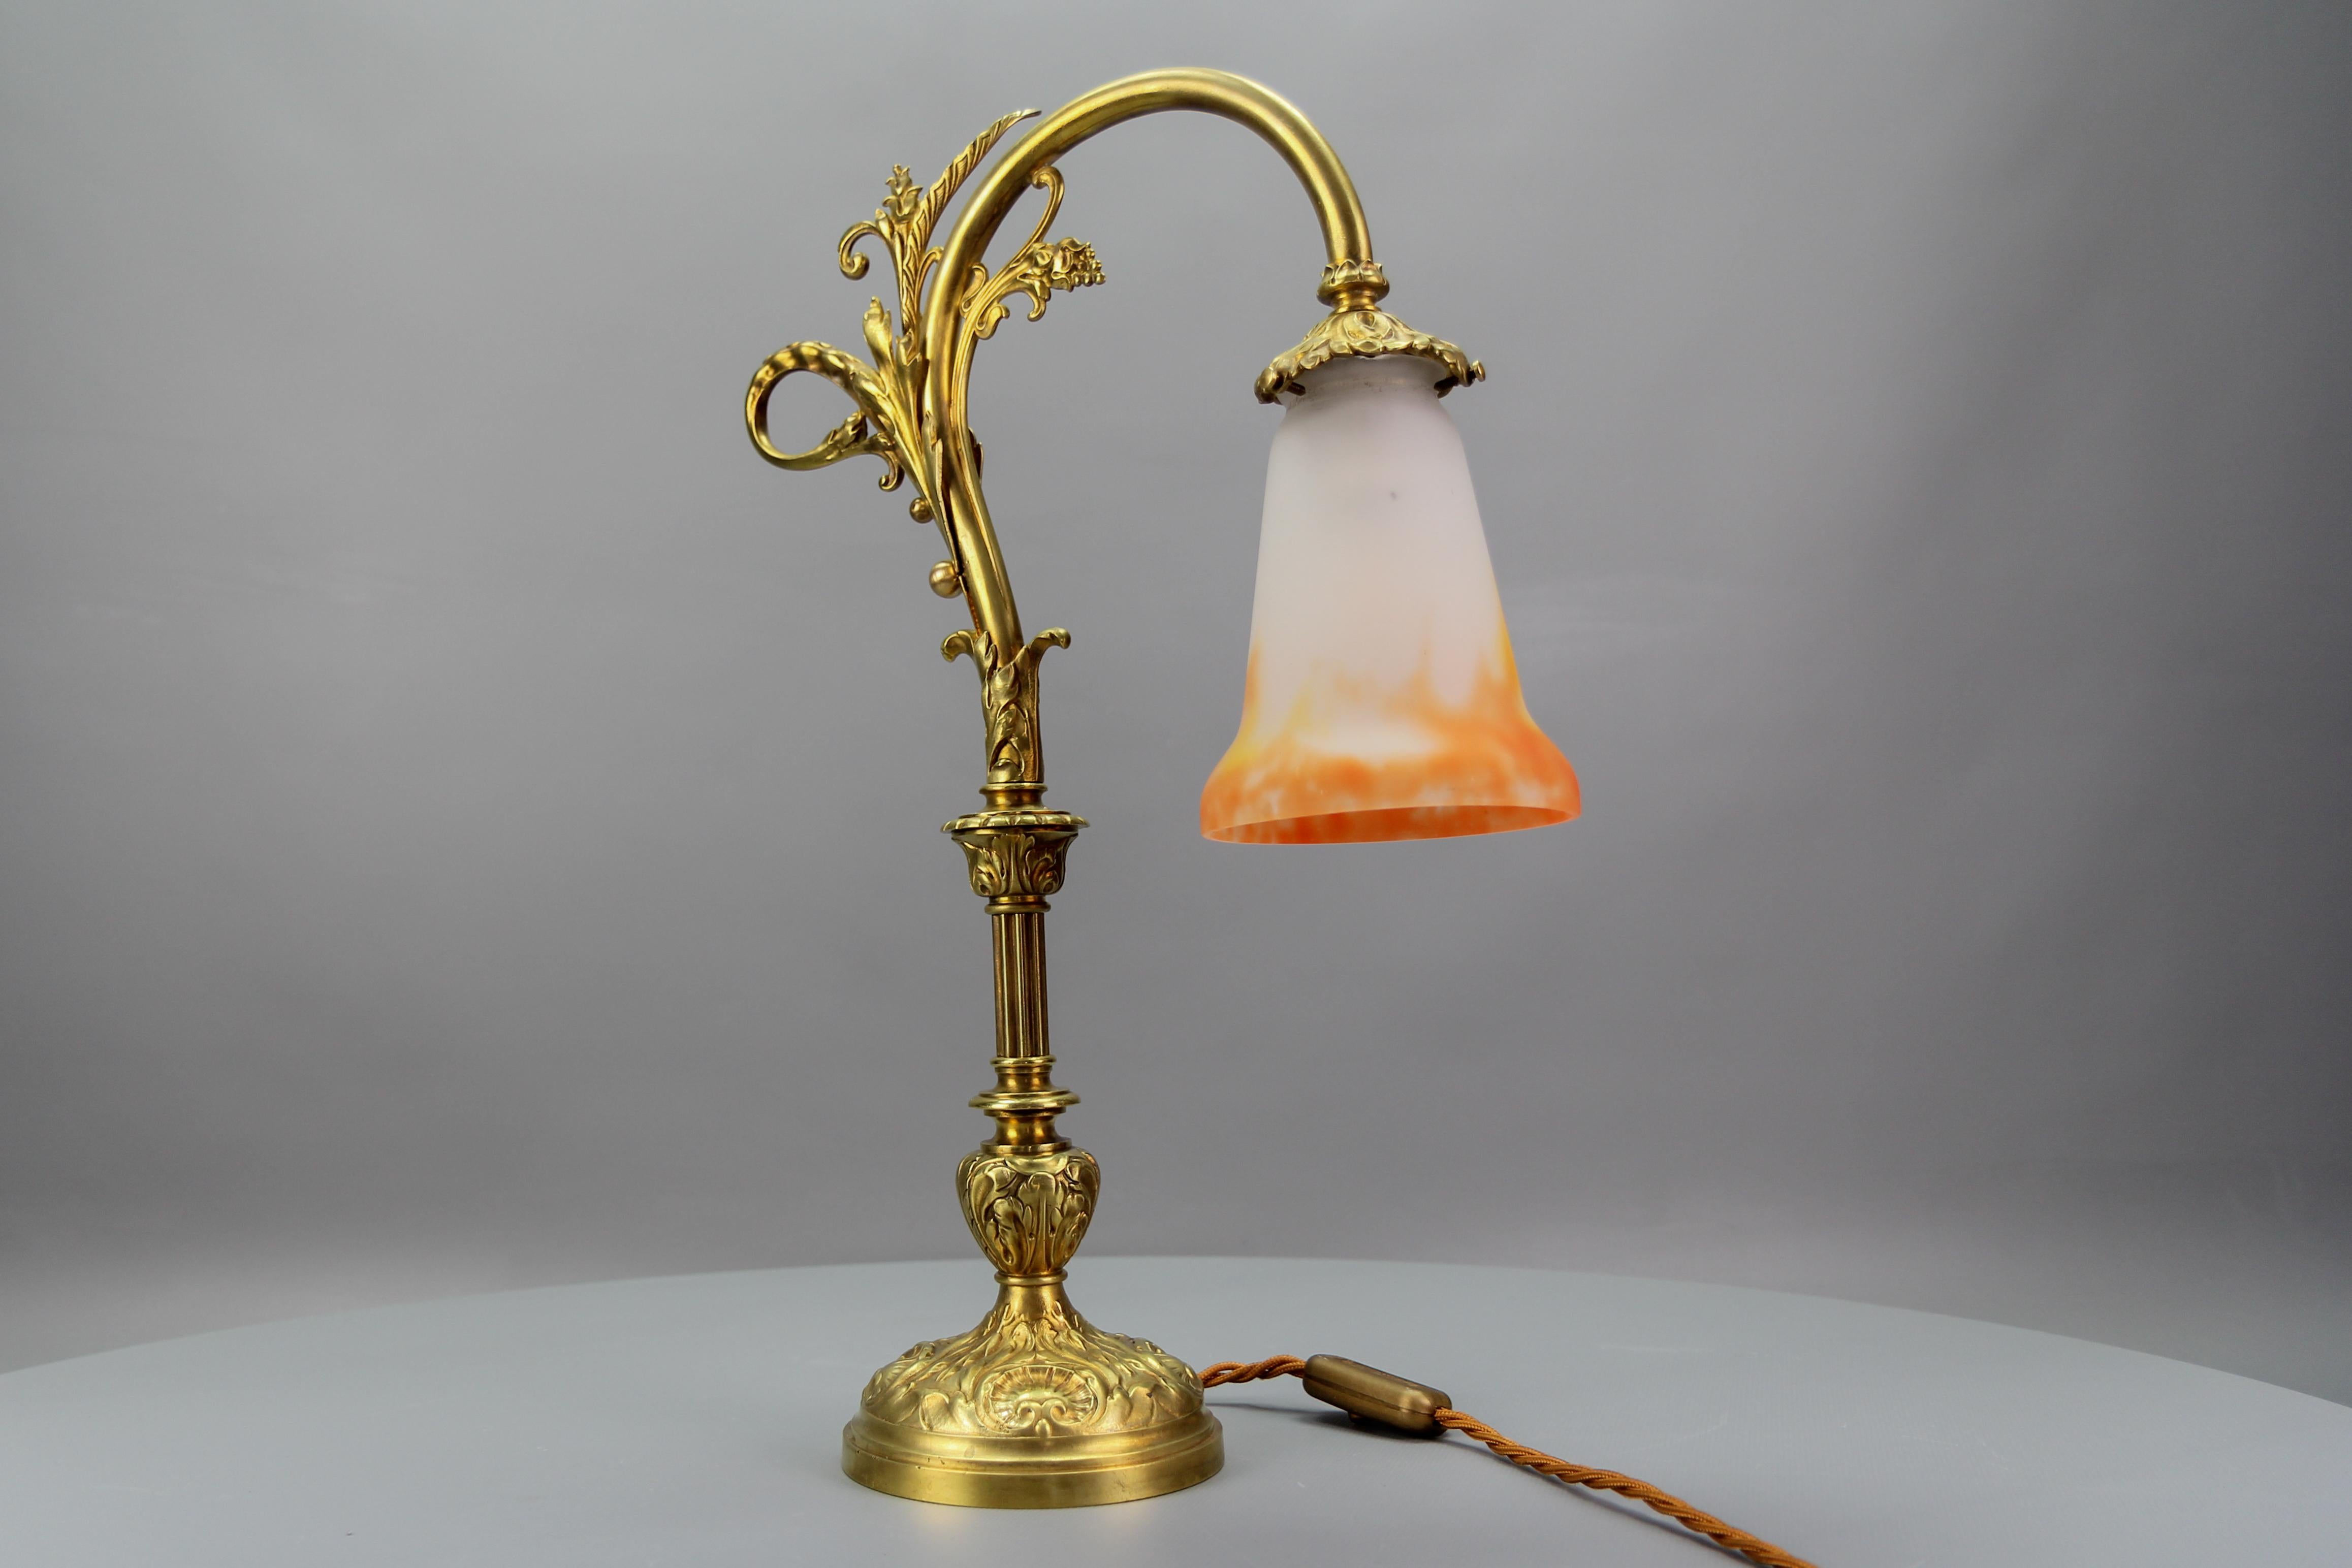 Französische Jugendstil-Tischlampe aus Bronze mit Glasschirm, signiert GV de Croismare, aus den 1920er Jahren.
Eine bezaubernde und große französische Tischlampe aus Bronze, verziert mit Akanthusblättern und Muschelmotiven aus dem Rokoko.
Schöner